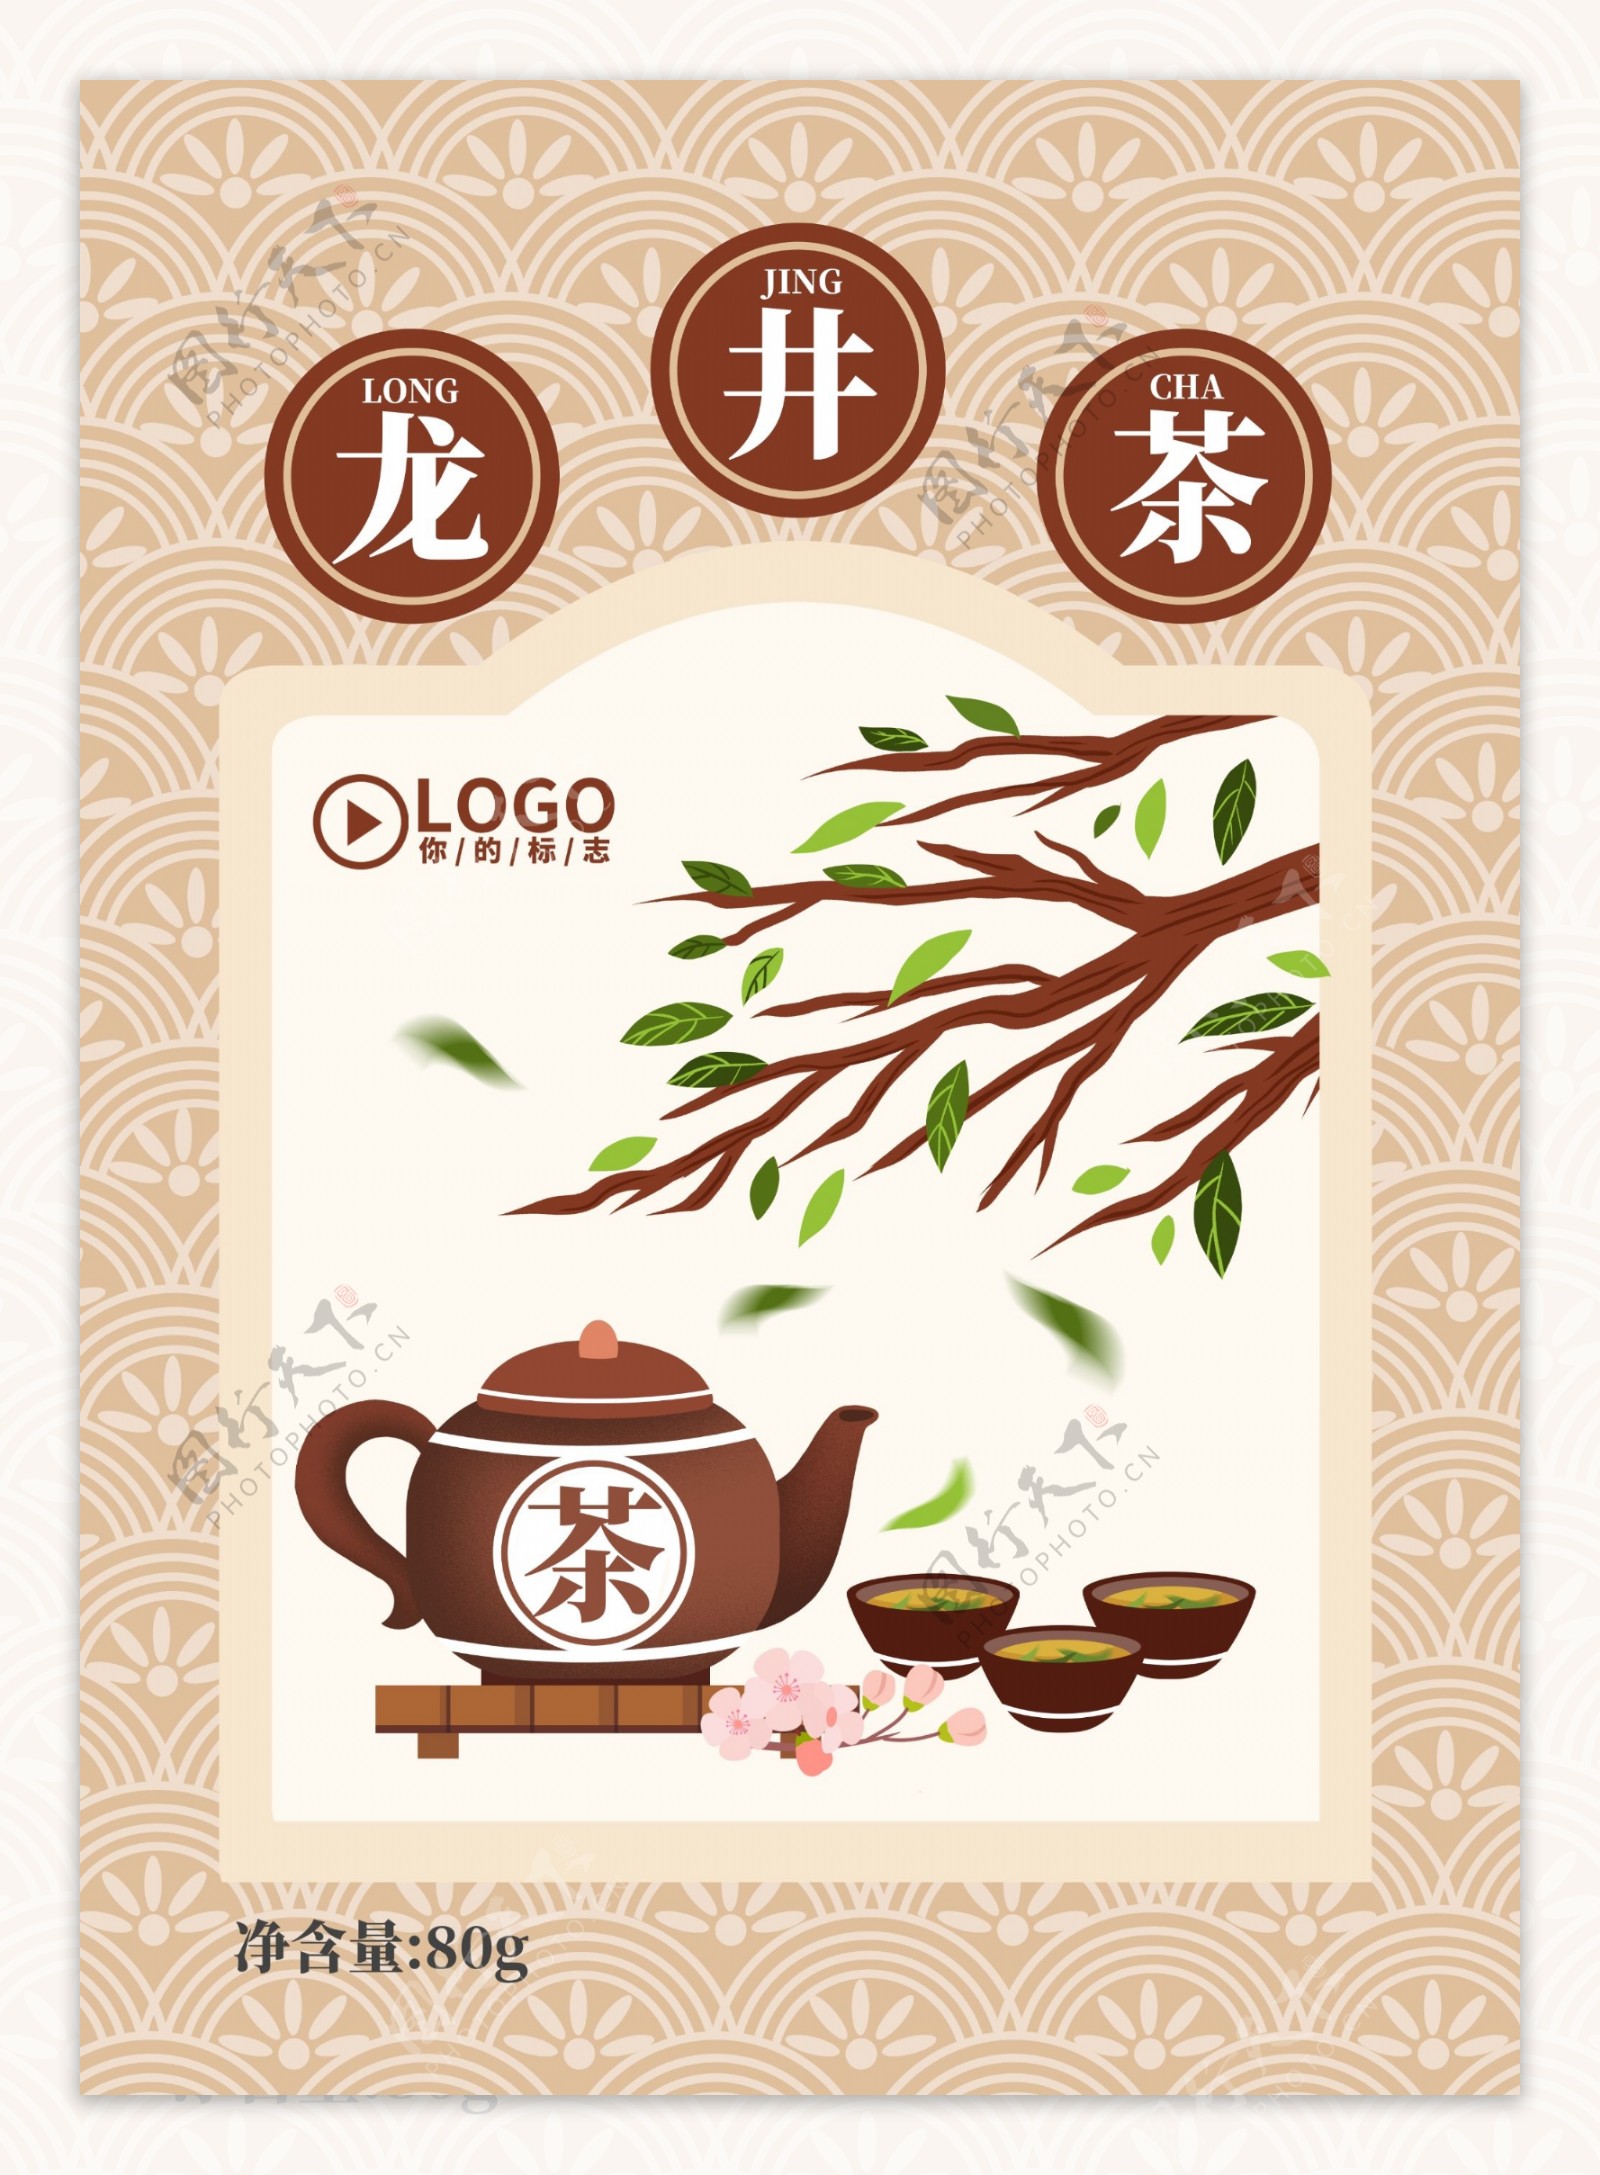 中国风龙井茶茶叶插画包装